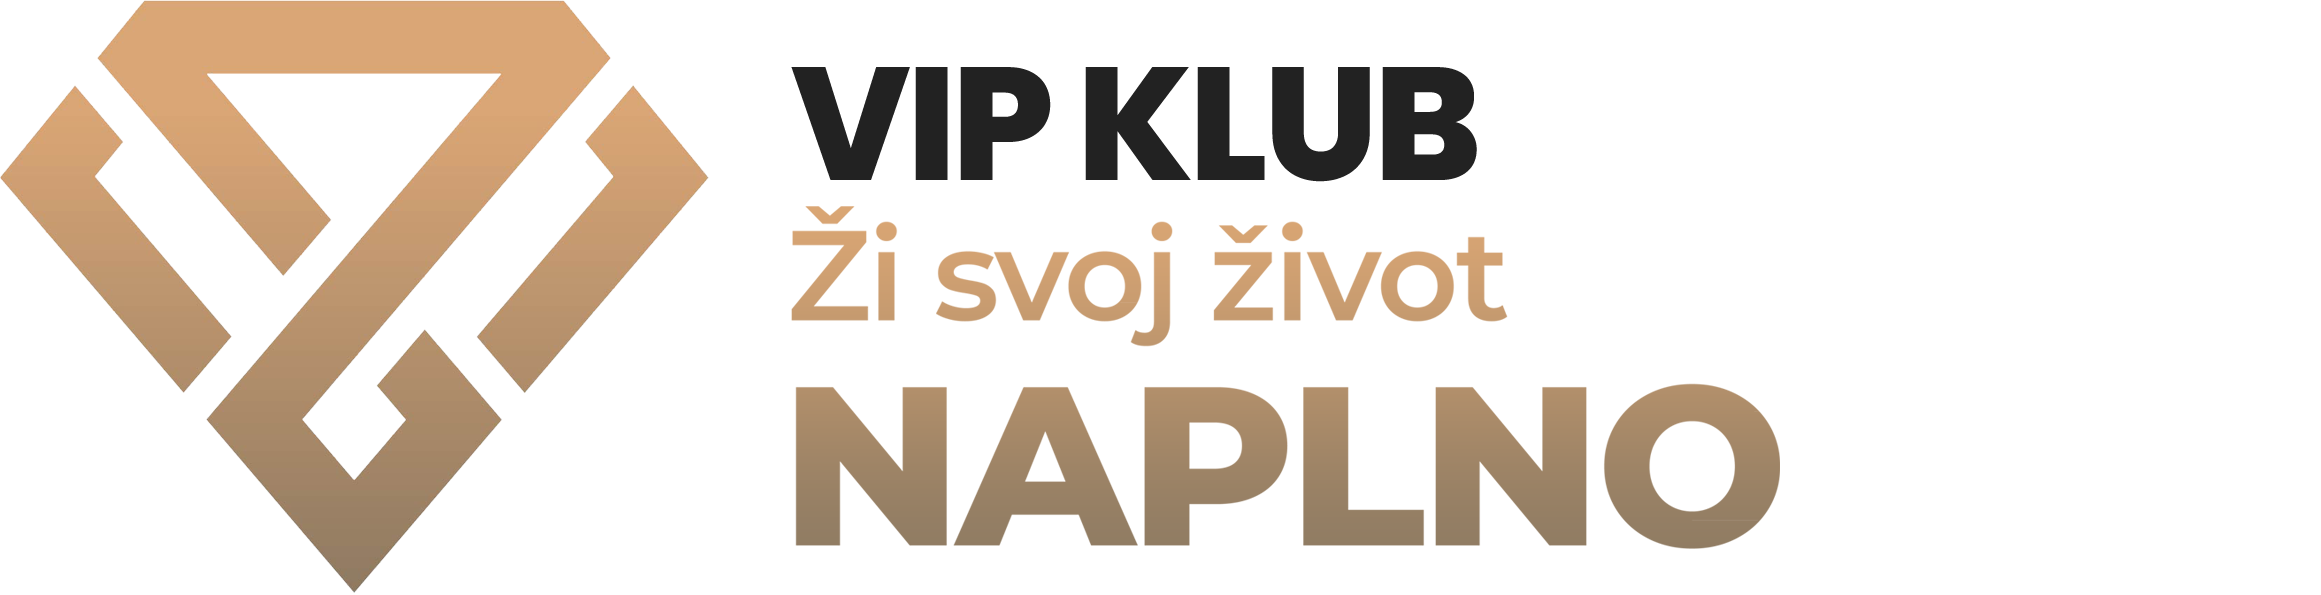 www.zisvojzivotnaplno.sk